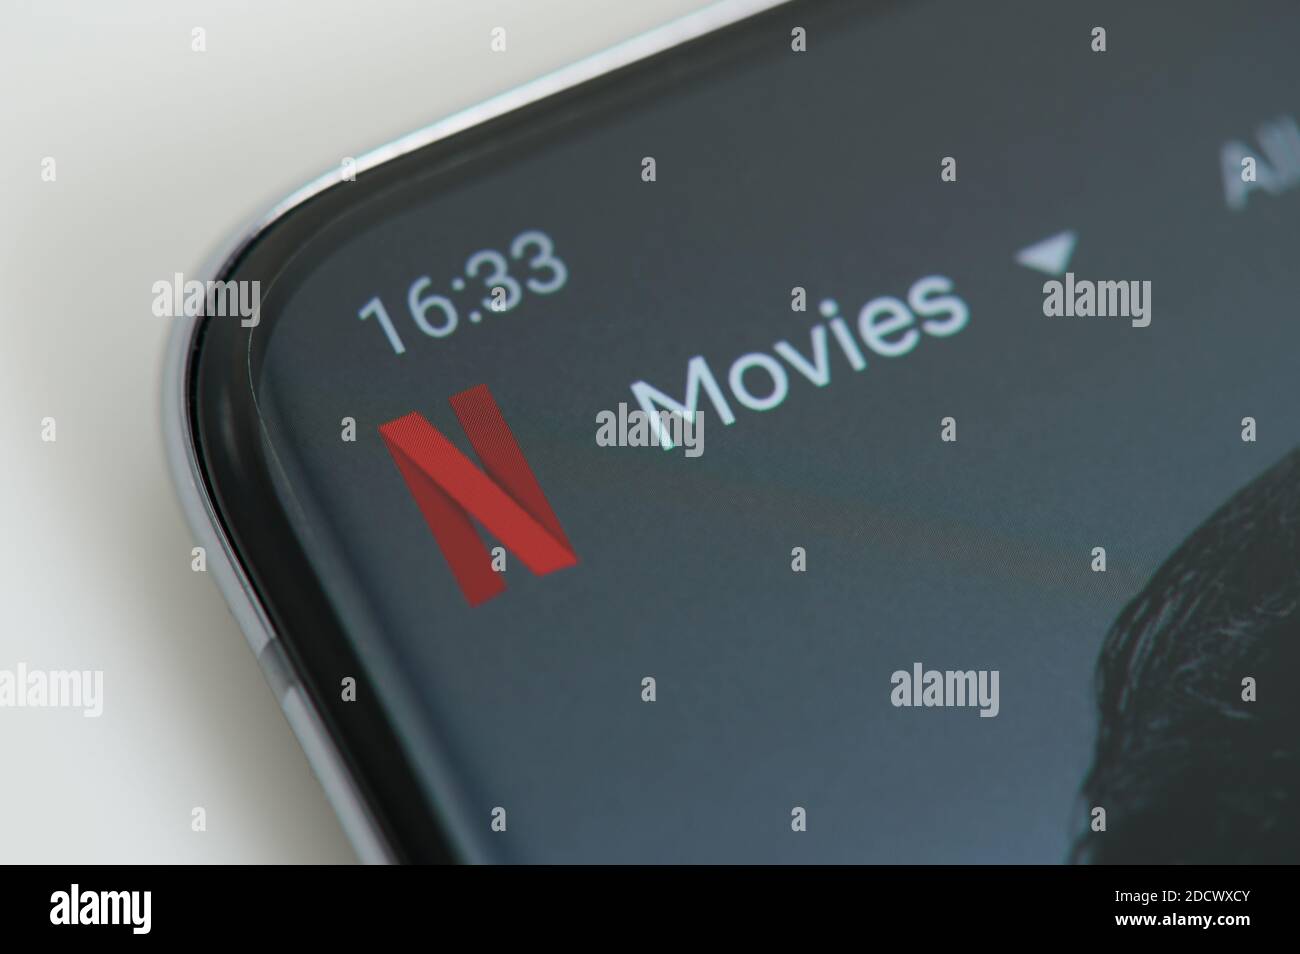 New york, USA - 23. November 2020: Filme auf netflix serivce Uhr auf Smartphone-Bildschirm clsoe up view Stockfoto